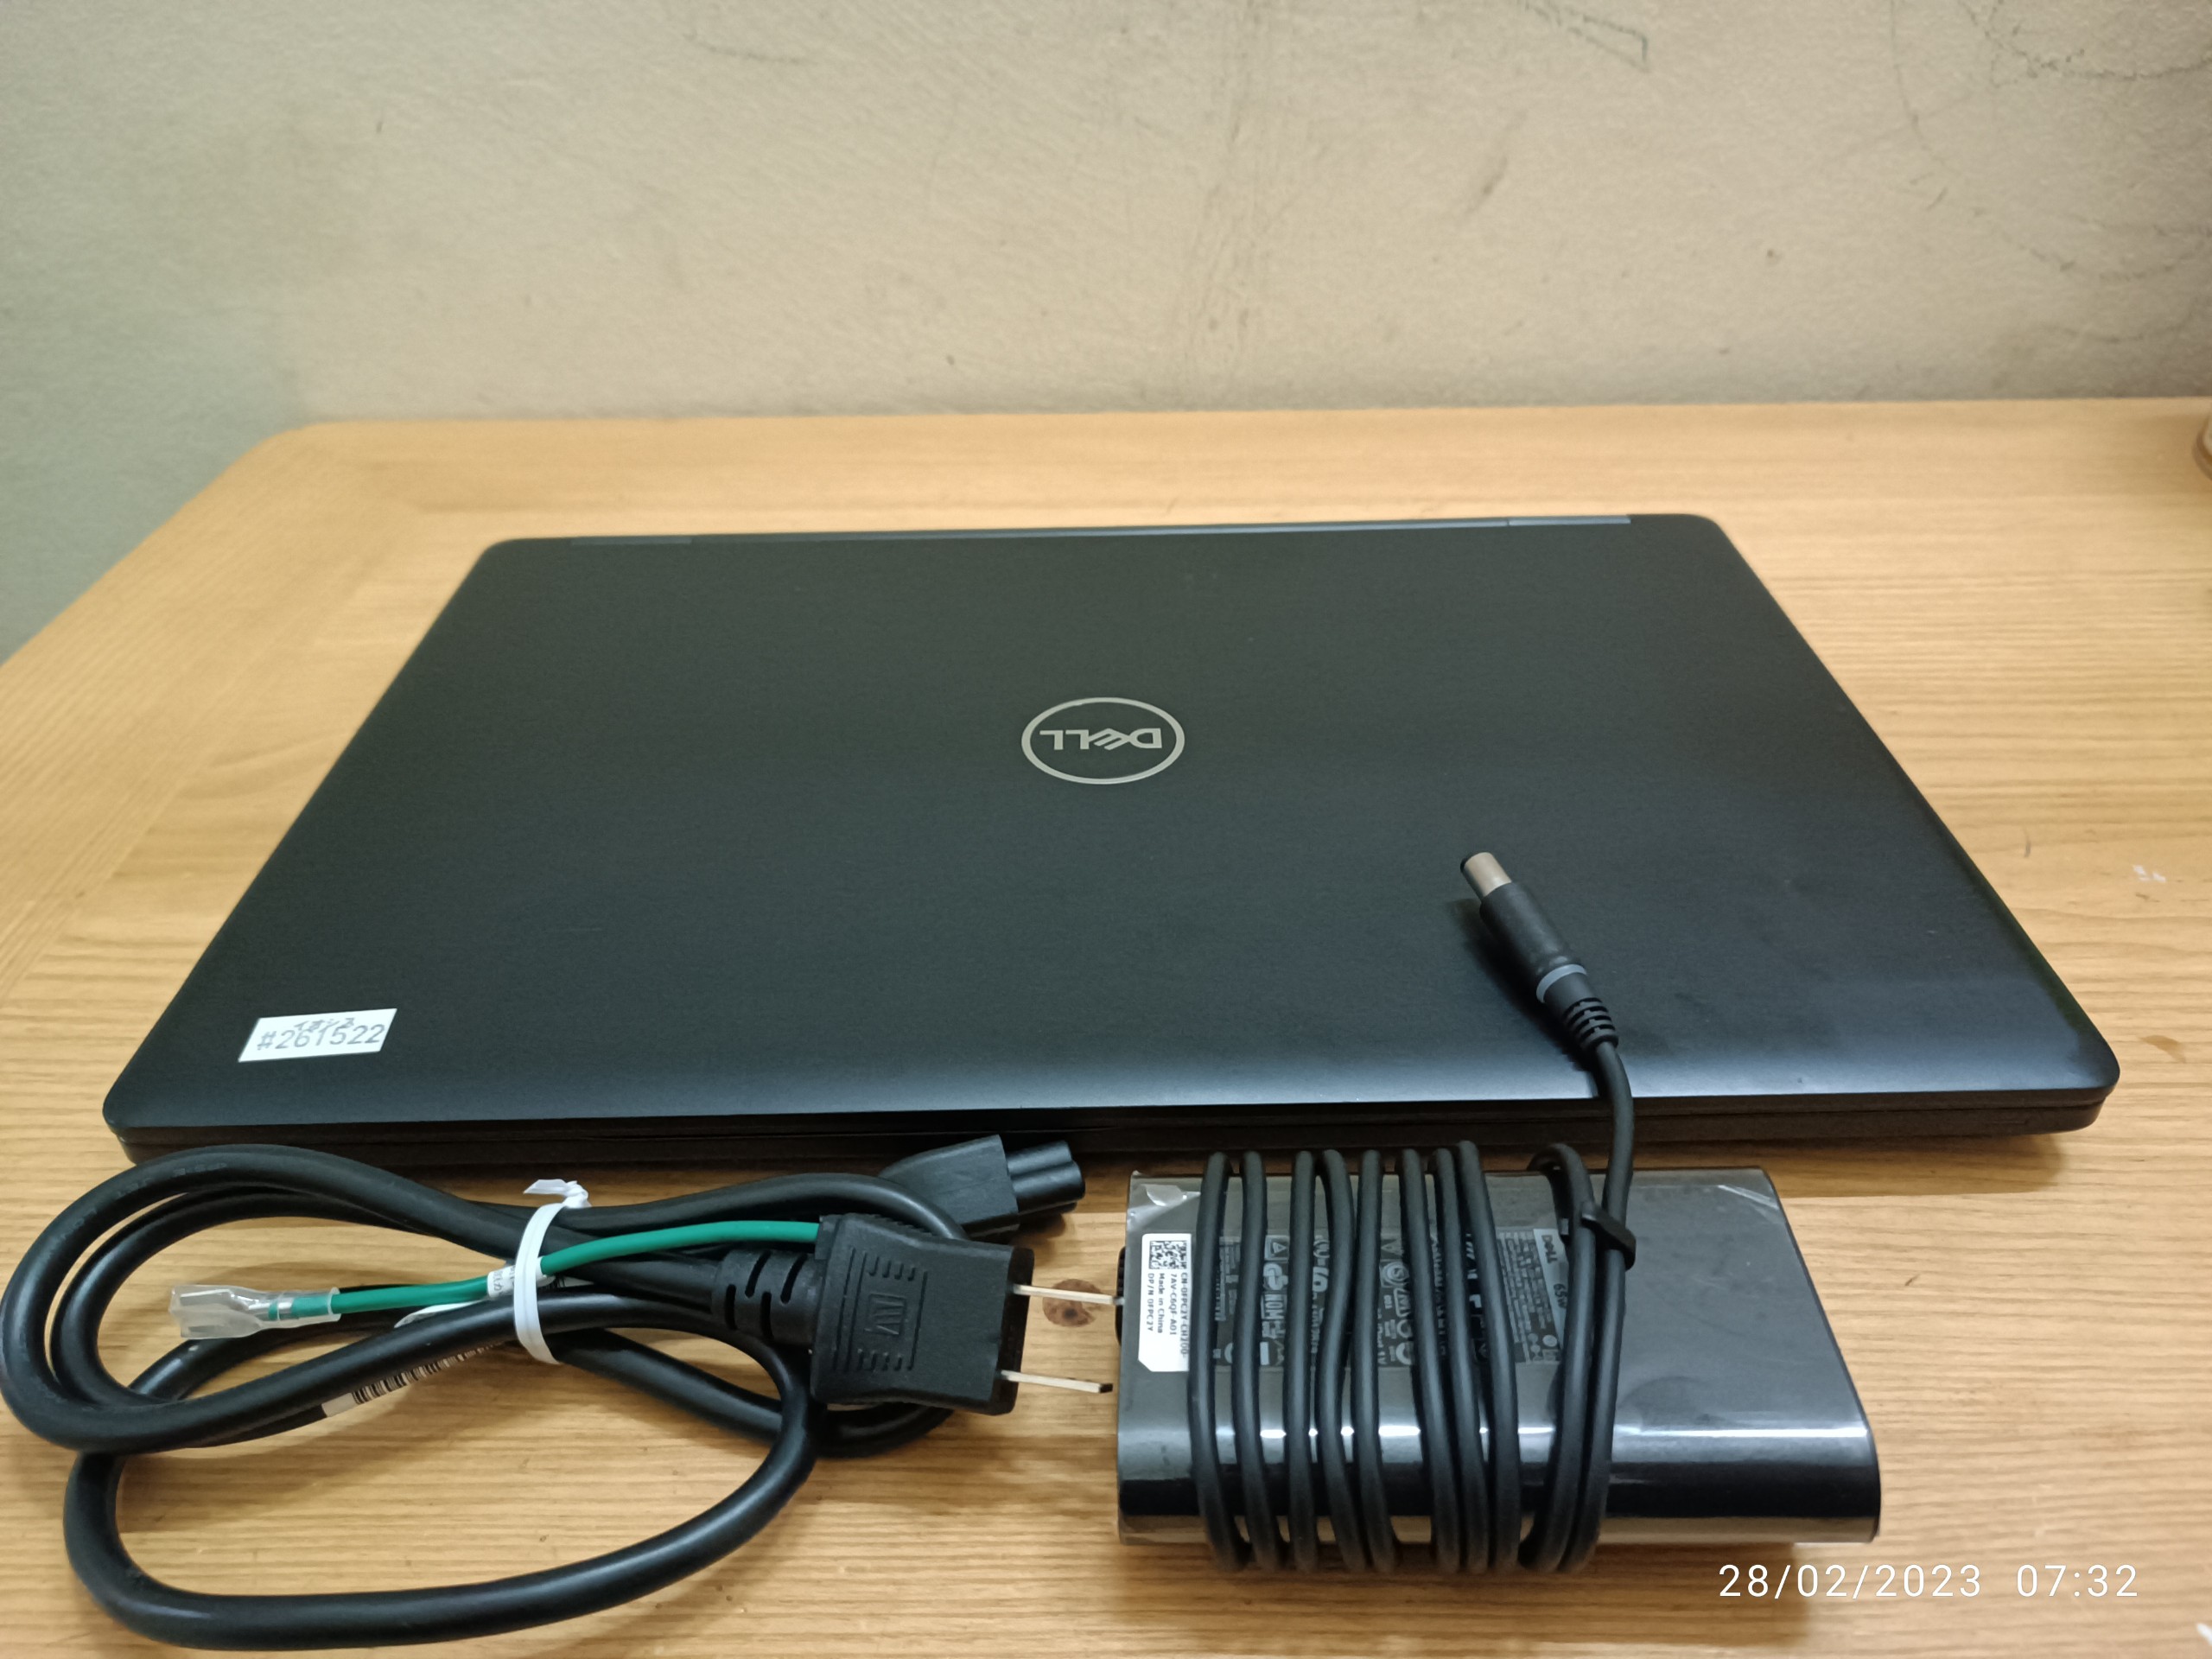 2 Cần bán Laptop Dell core i7 Ram 16Gb, cạc rời  SSD 256Gb Sách tay từ Nhật